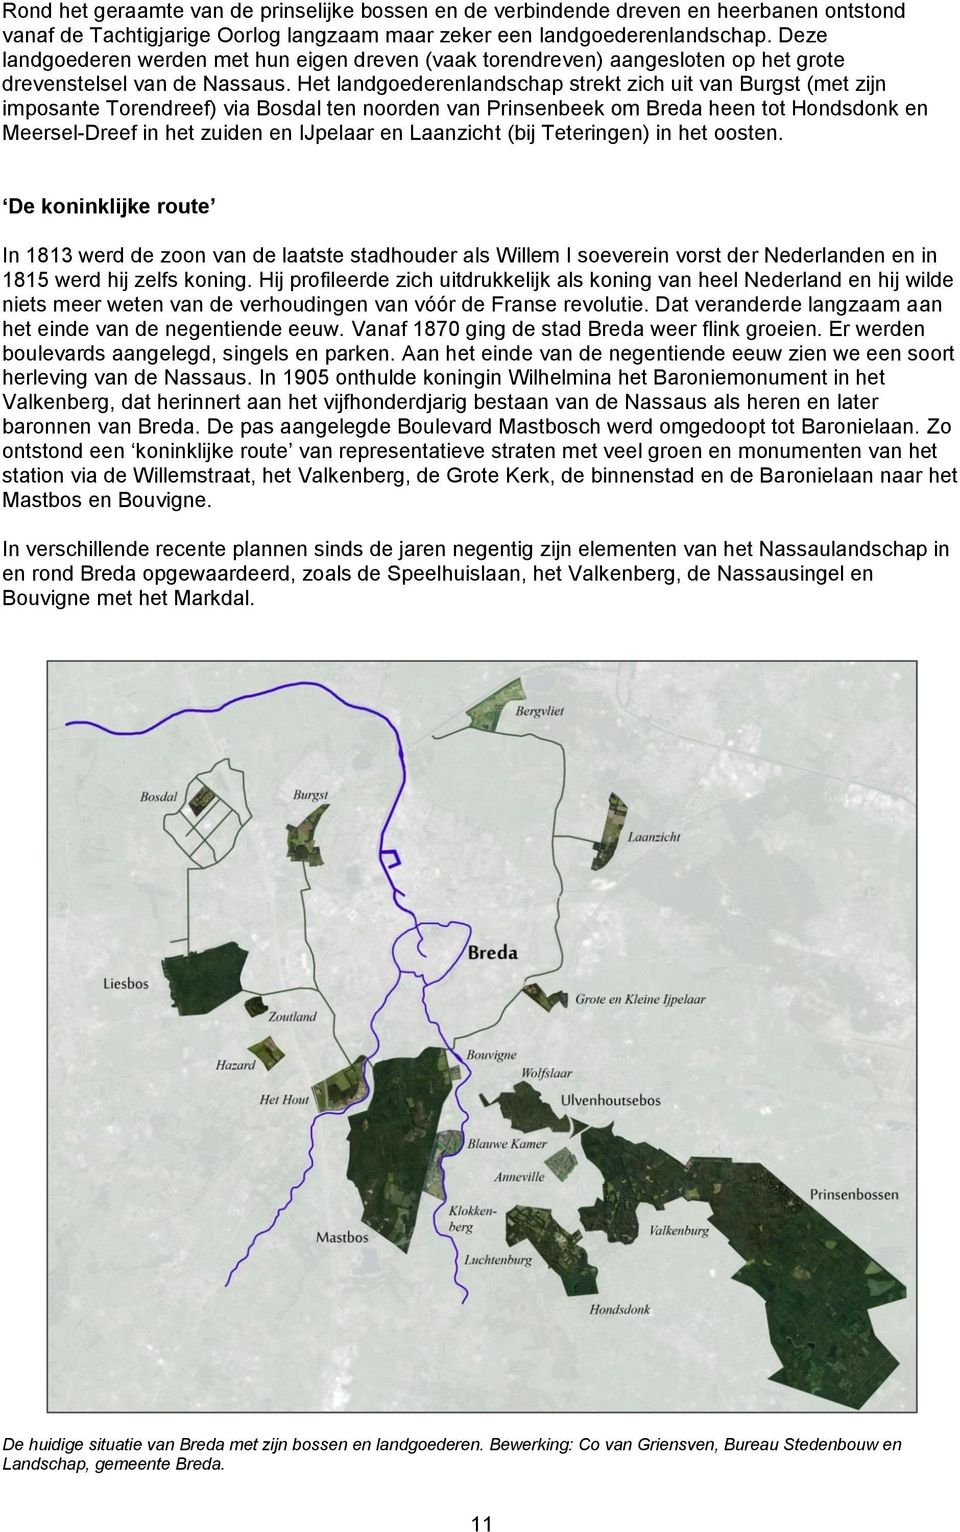 Het landgoederenlandschap strekt zich uit van Burgst (met zijn imposante Torendreef) via Bosdal ten noorden van Prinsenbeek om Breda heen tot Hondsdonk en Meersel-Dreef in het zuiden en IJpelaar en